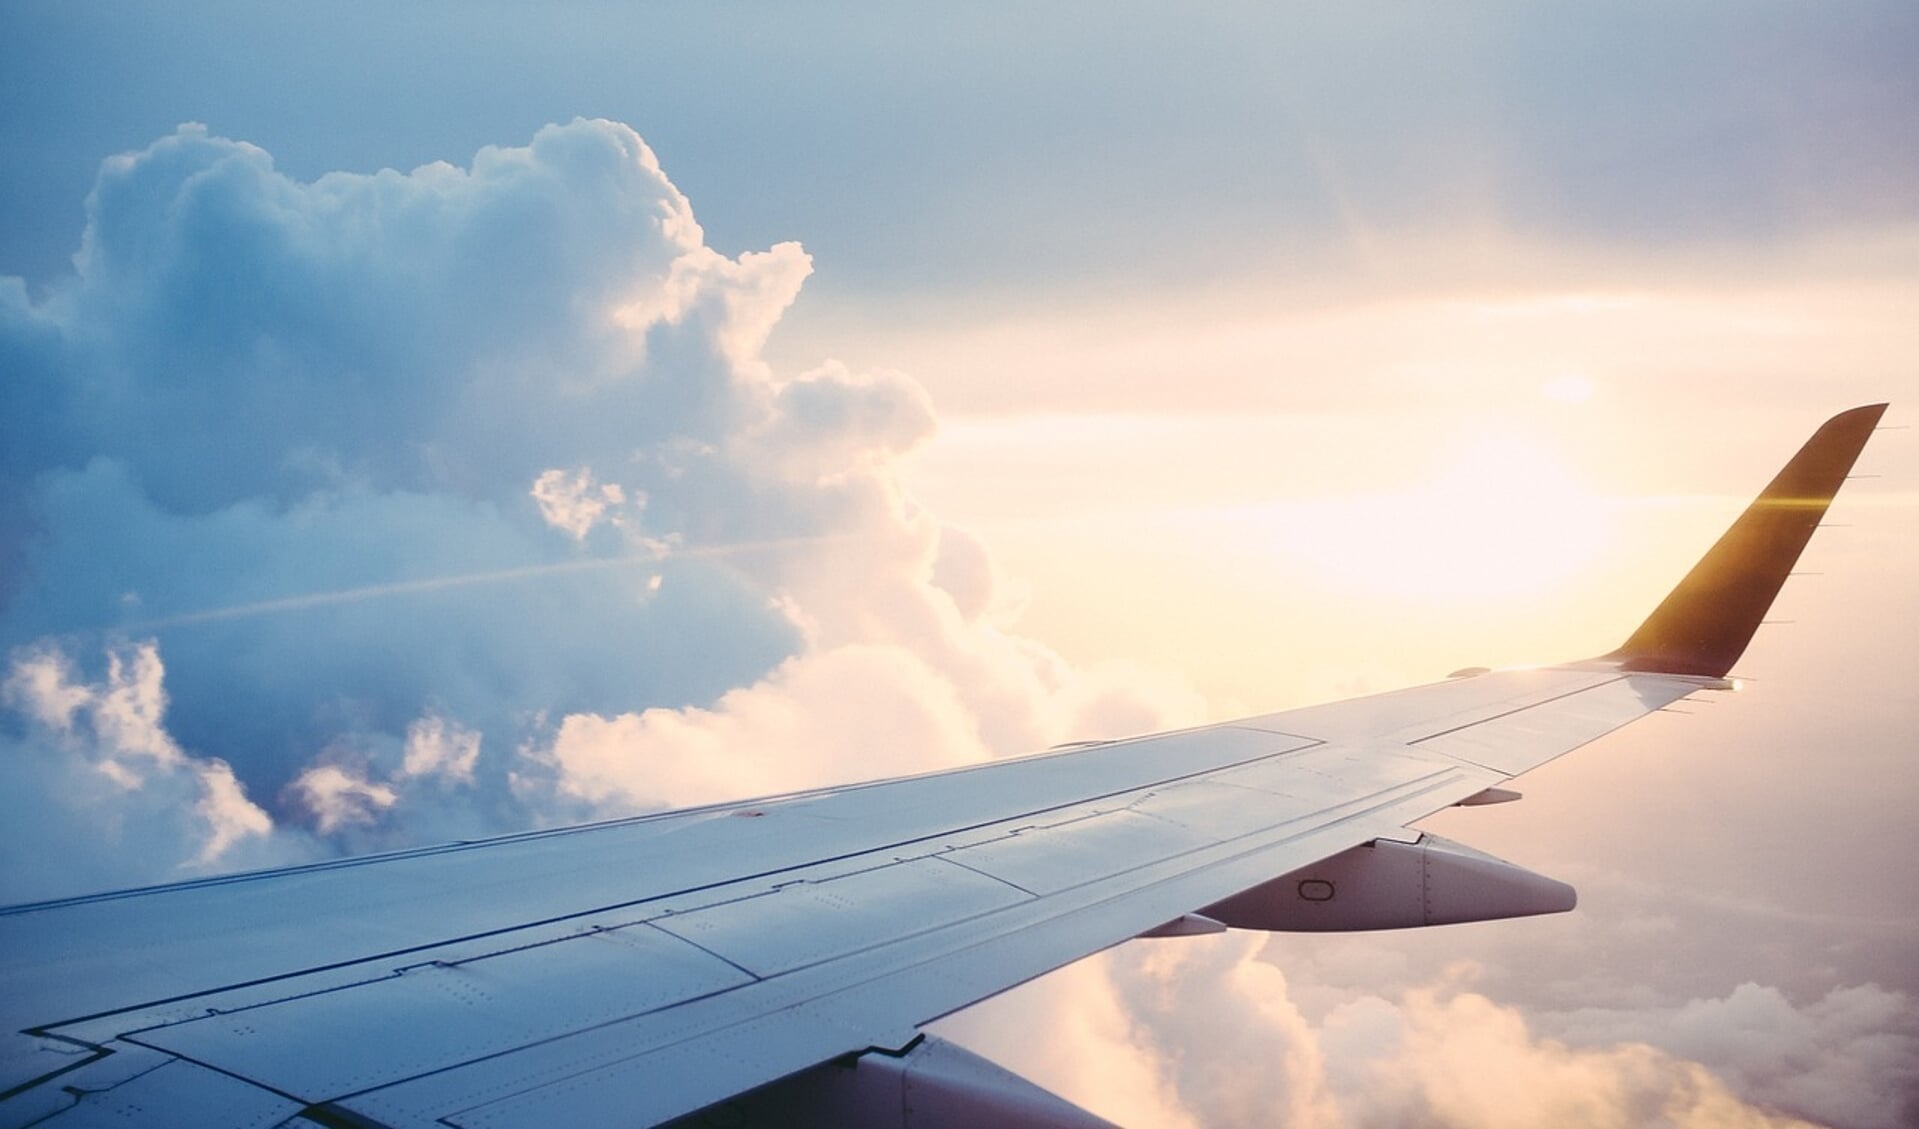 Vliegtuiggeluid is te verminderen door de ervaring ervan aan te pakken. 